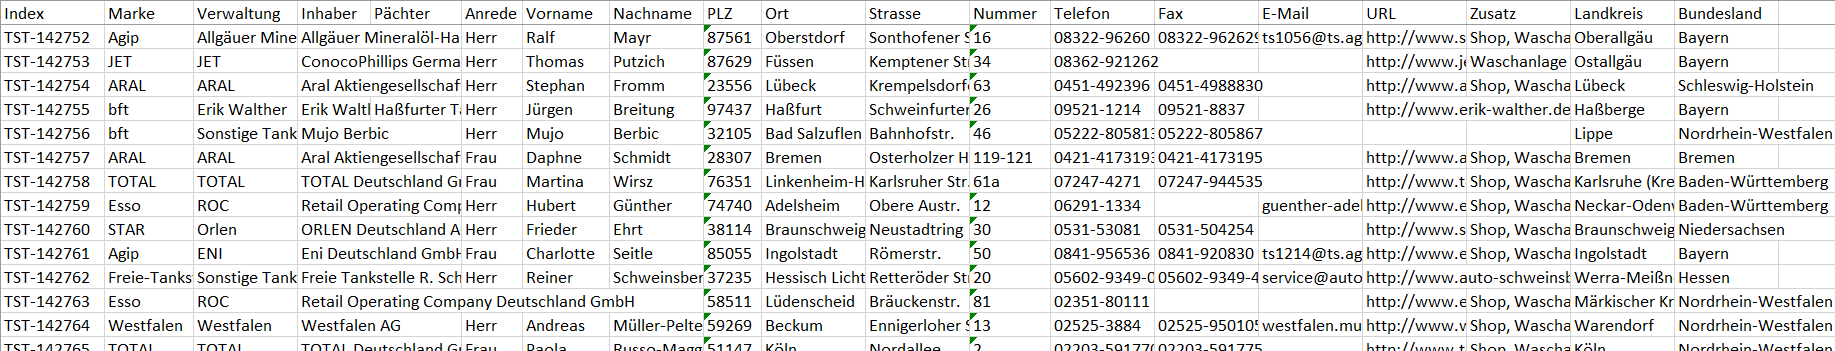 Datenbeispiel Adressen und Standorte der Tankstellen in Deutschland